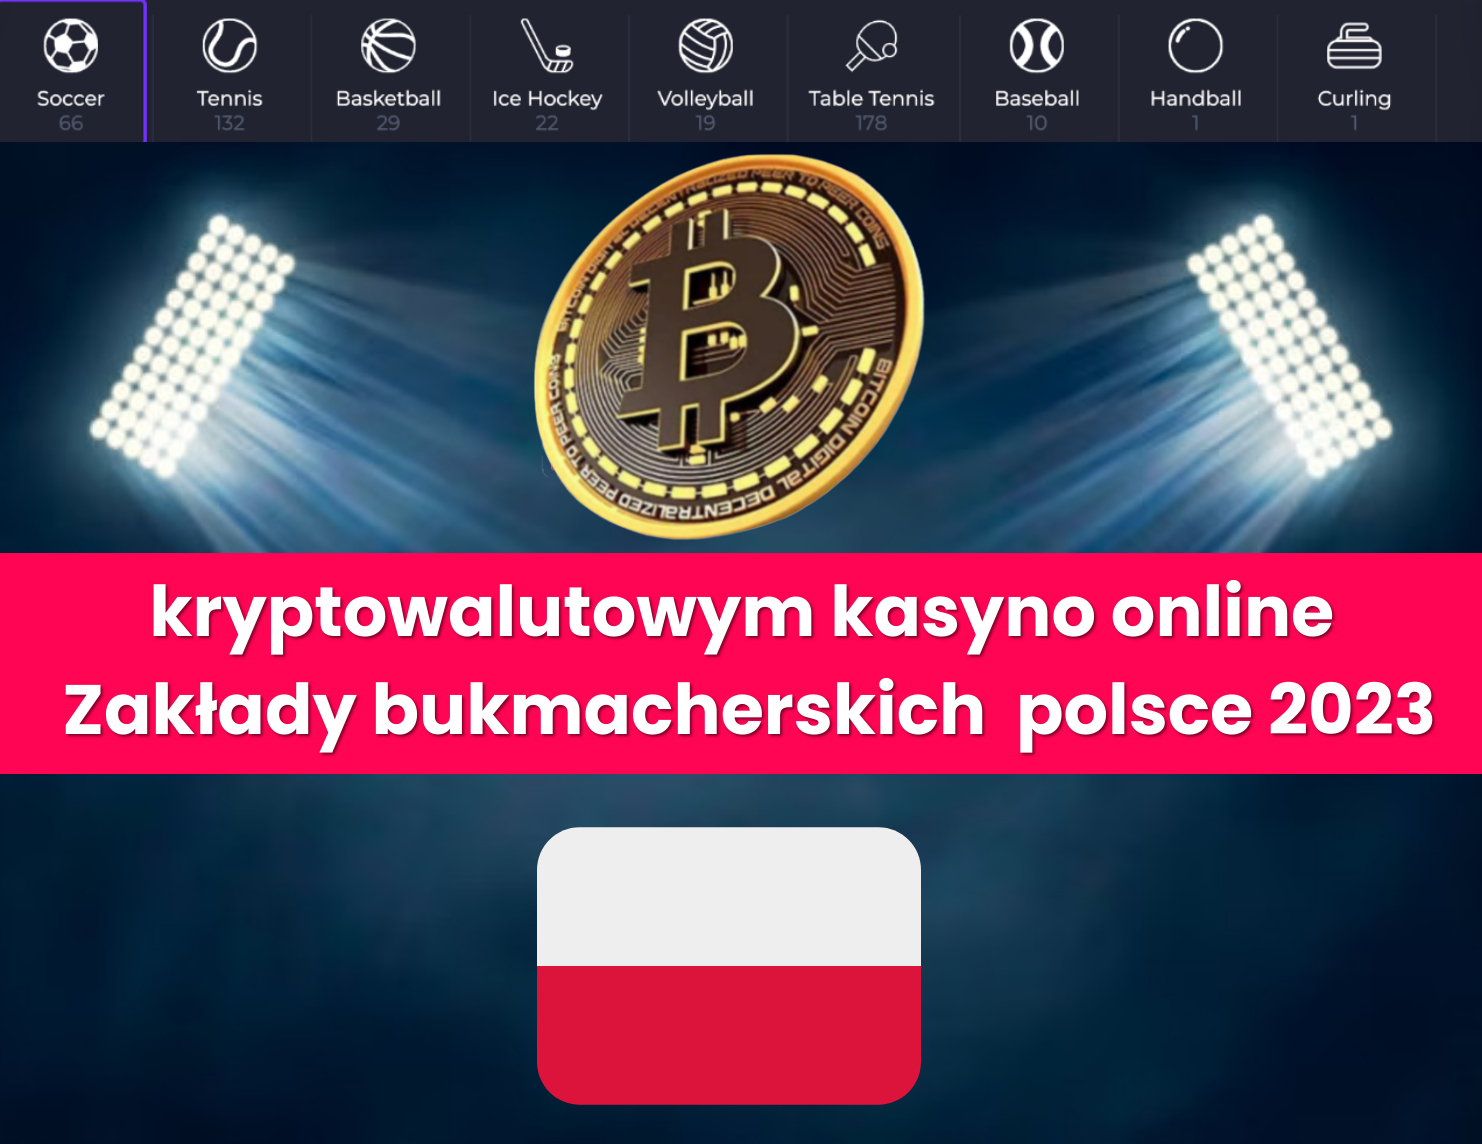 kryptowalutowym kasyno online Zakłady bukmacherskich polsce 2023